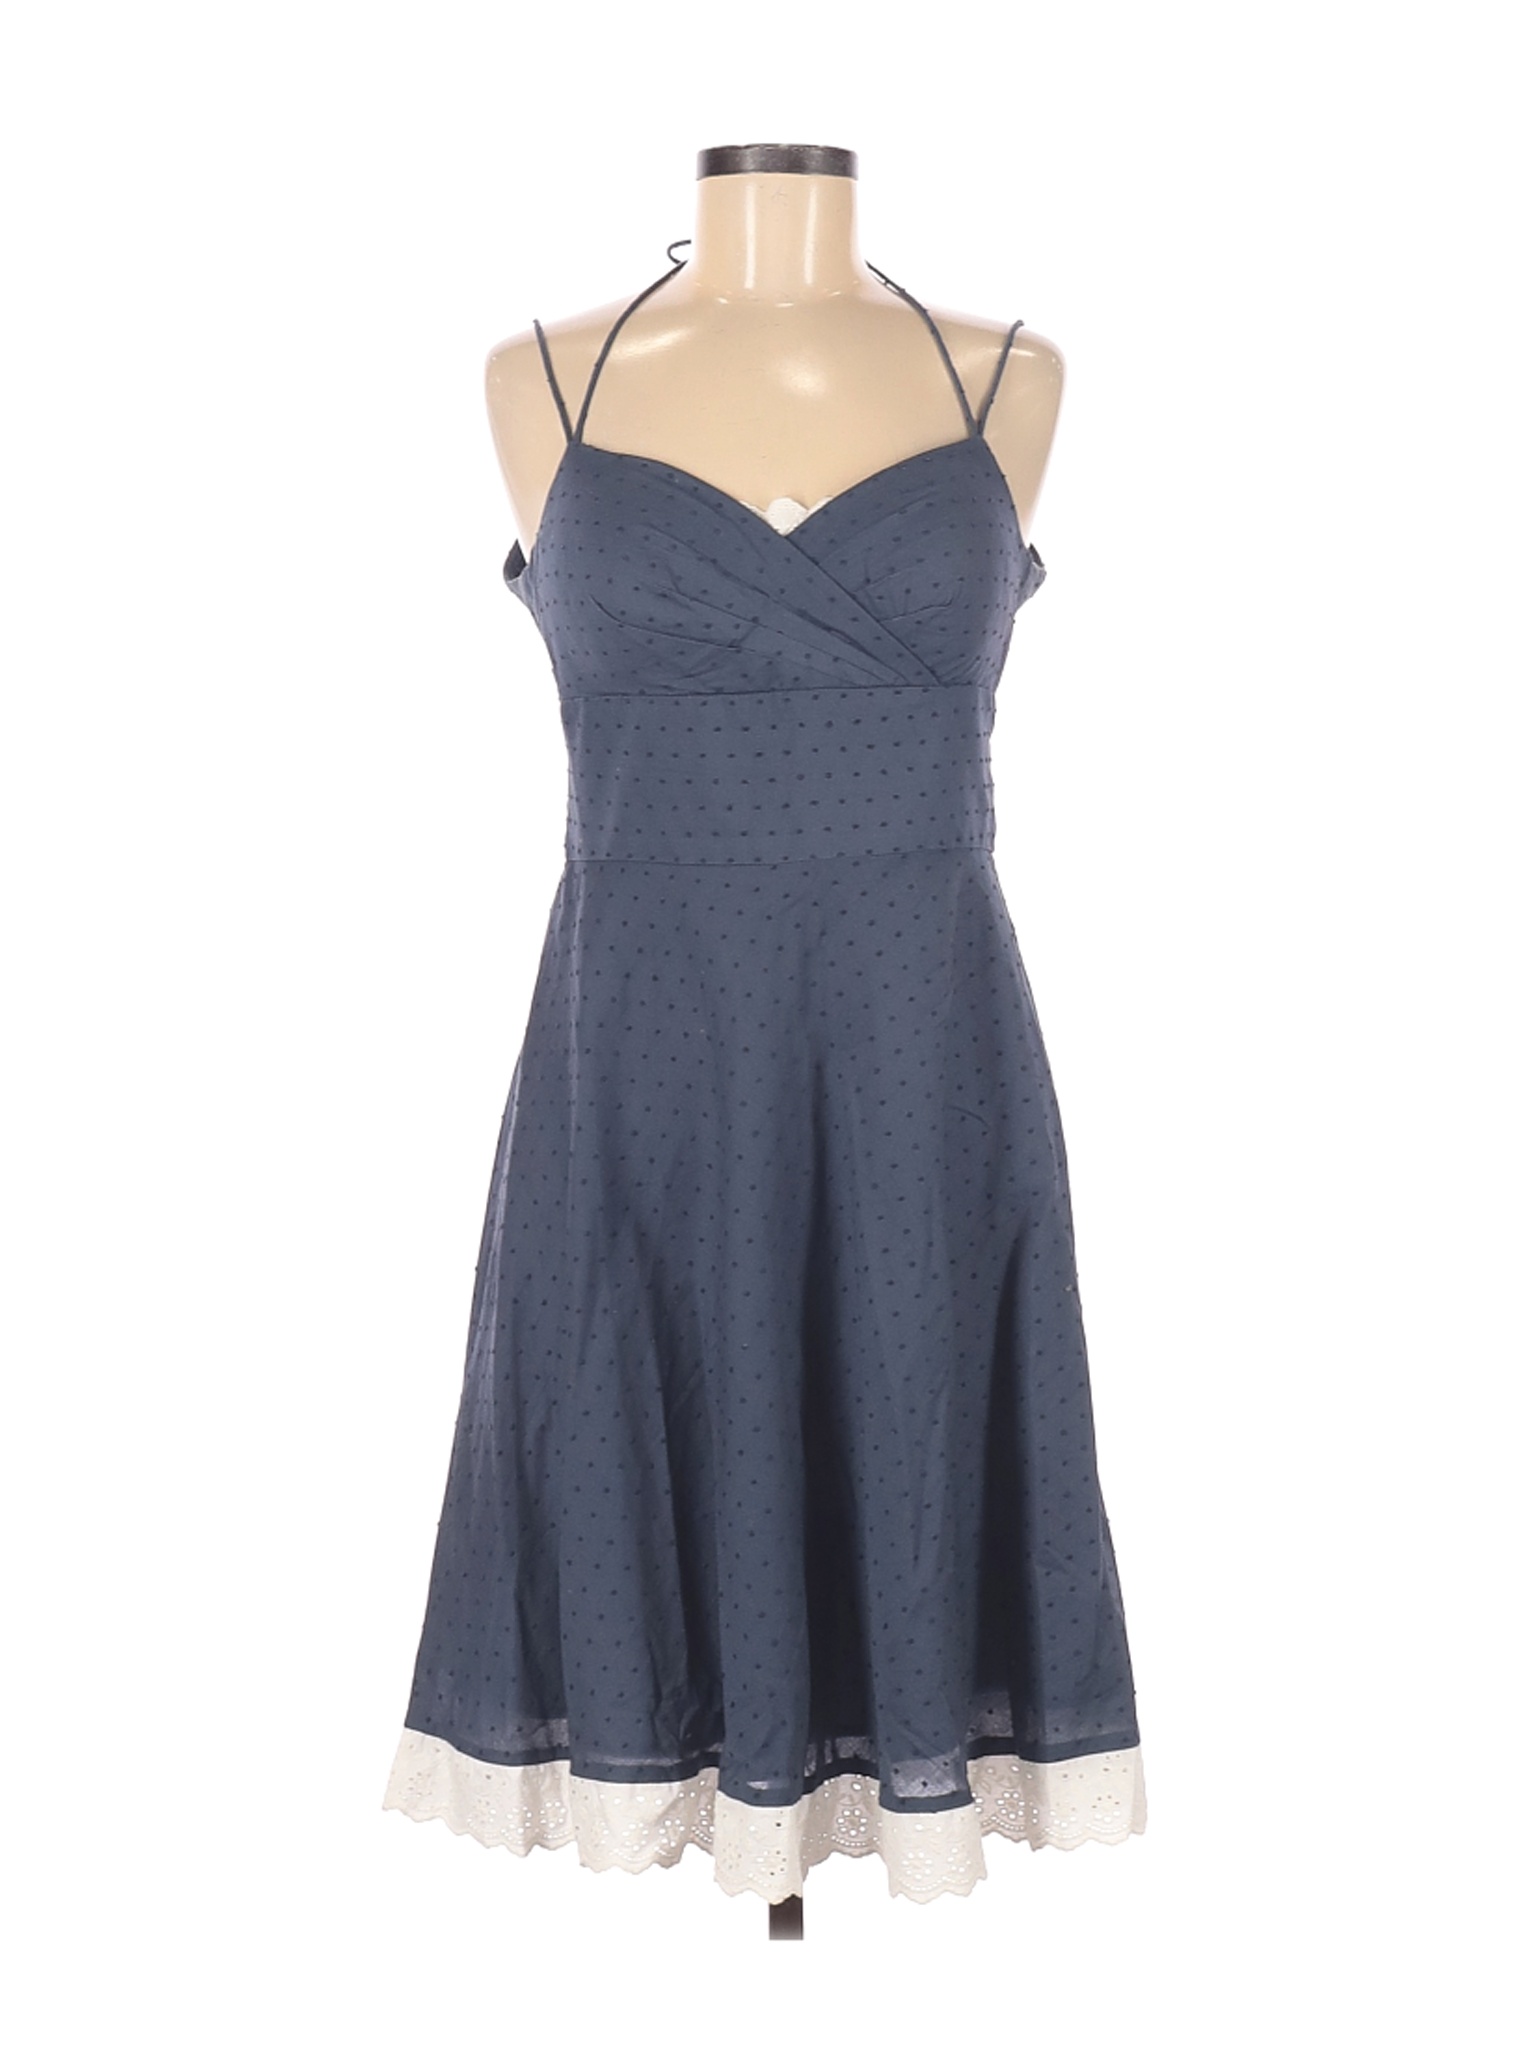 OC by OC Women Blue Casual Dress 8 | eBay